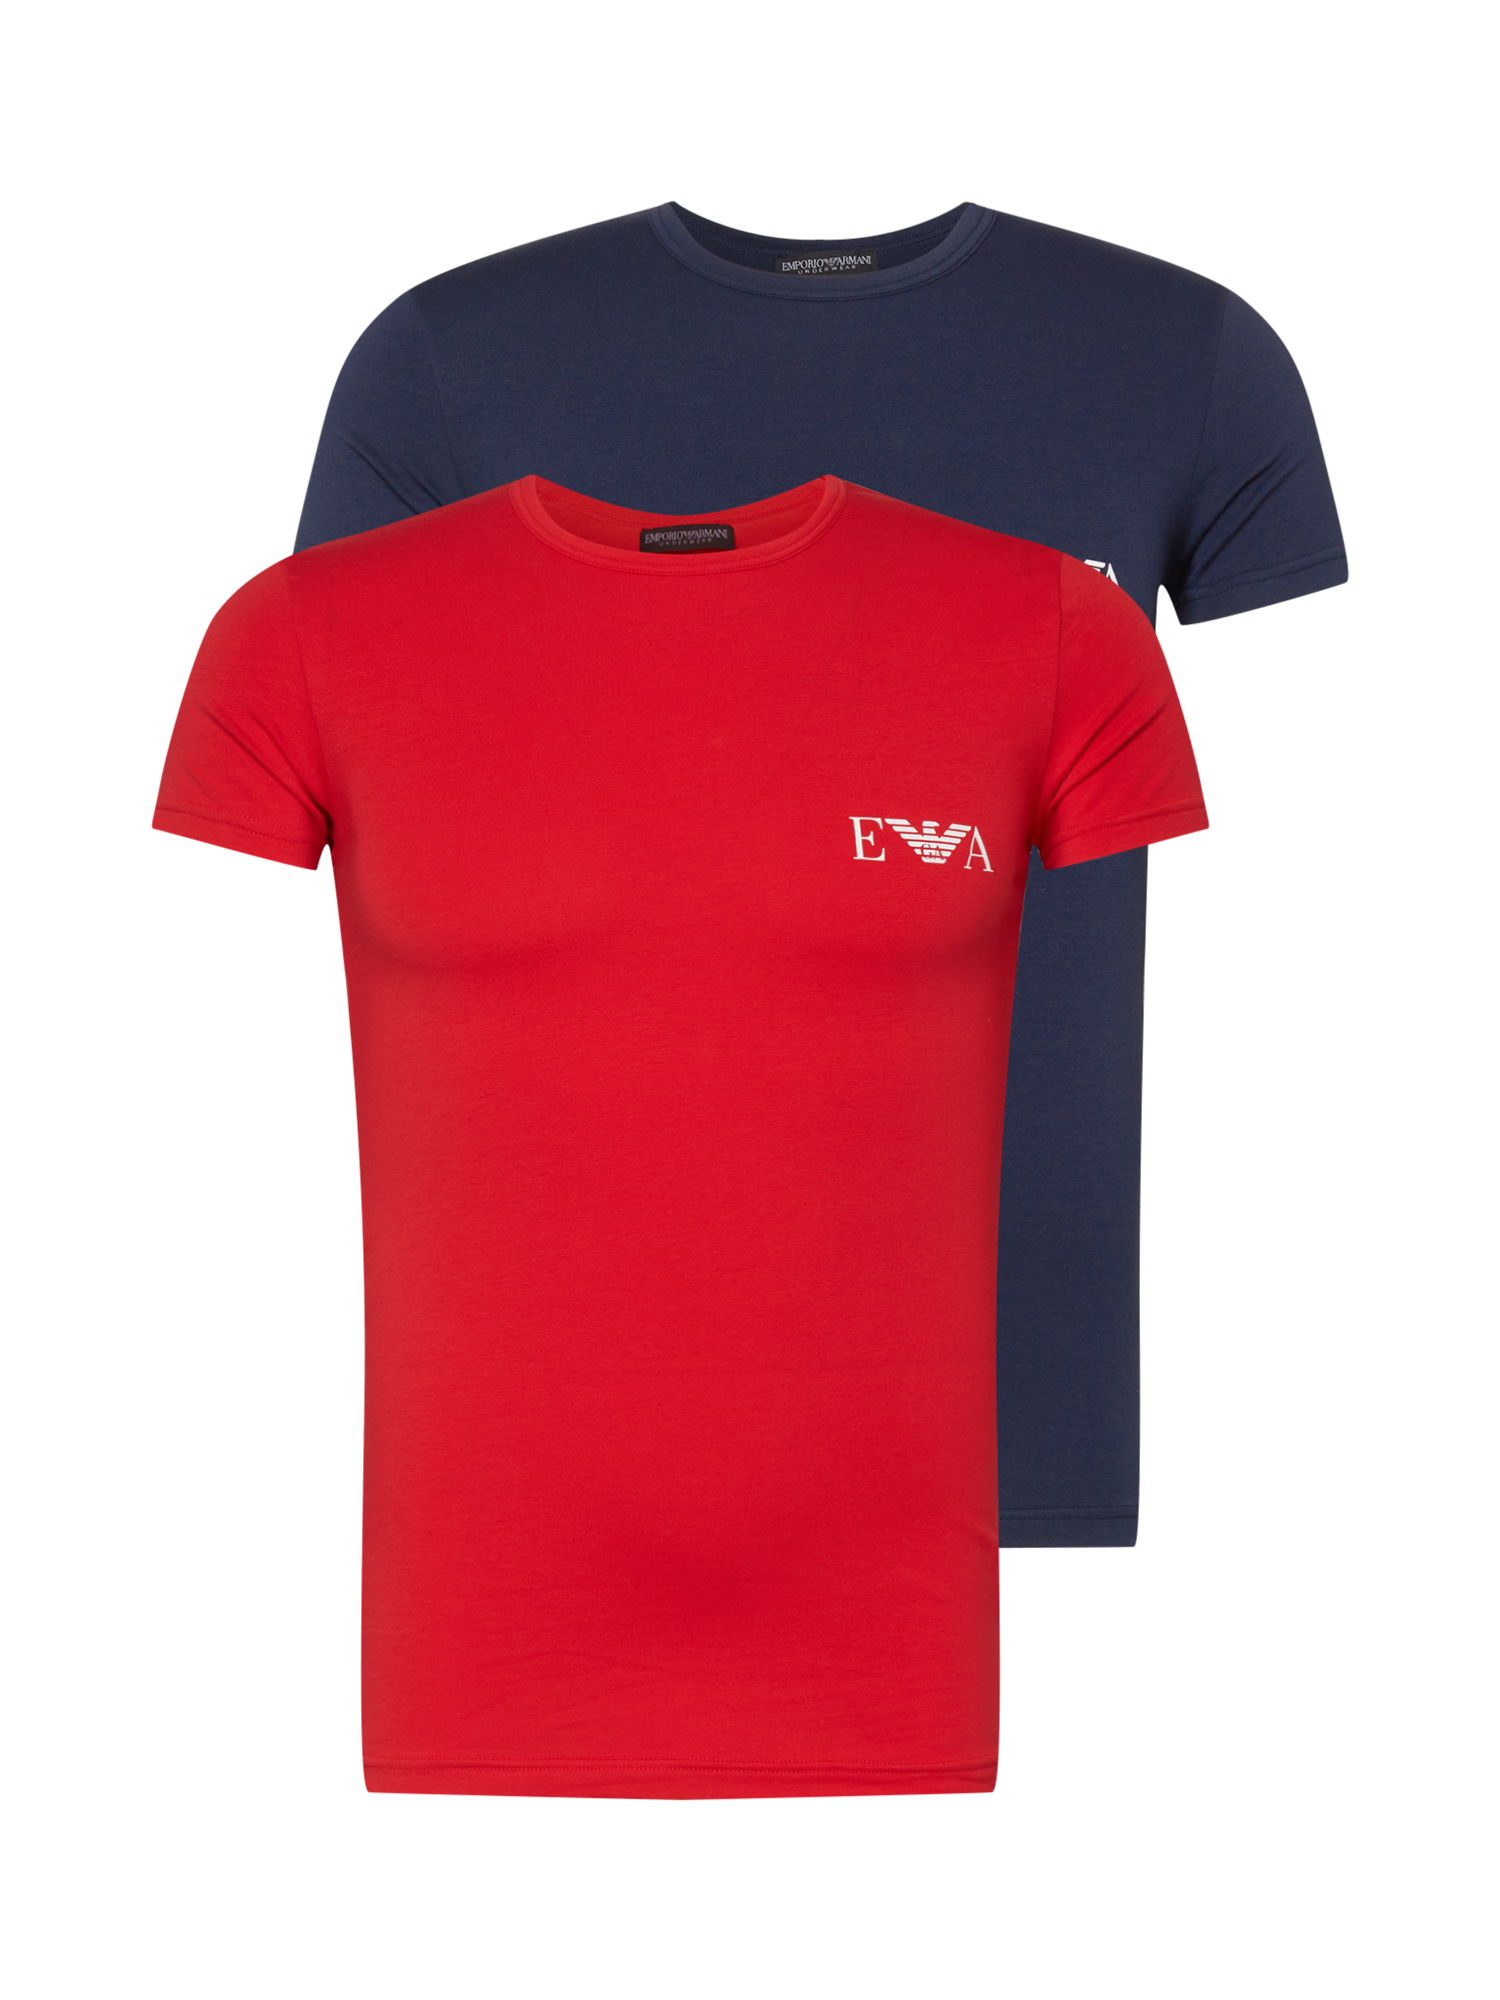 Emporio Armani Koszulka w kolorze Czerwony, Granatowym 